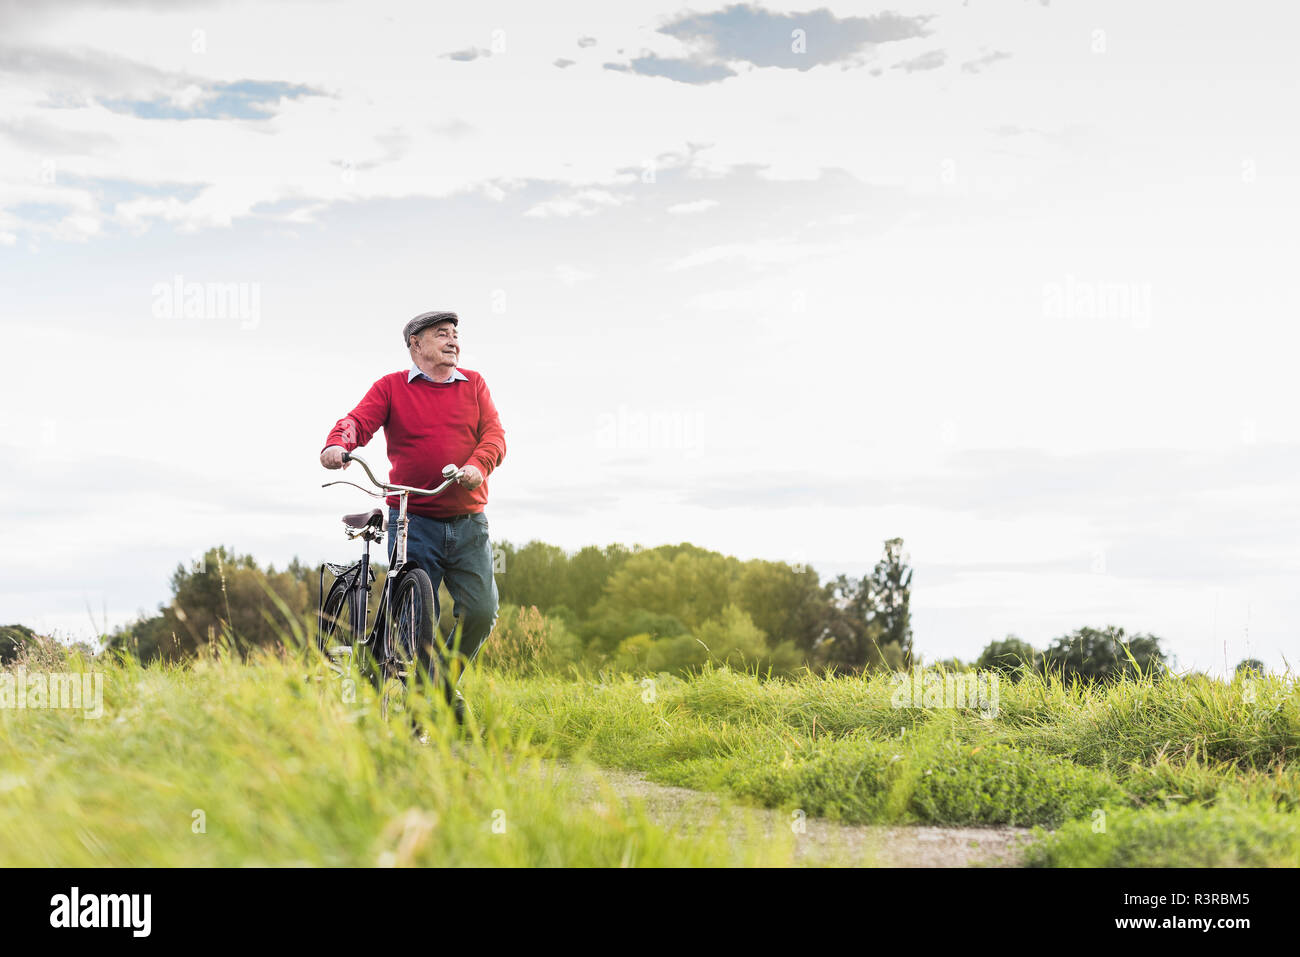 Senior man pushing bicycle in rural landscape Stock Photo